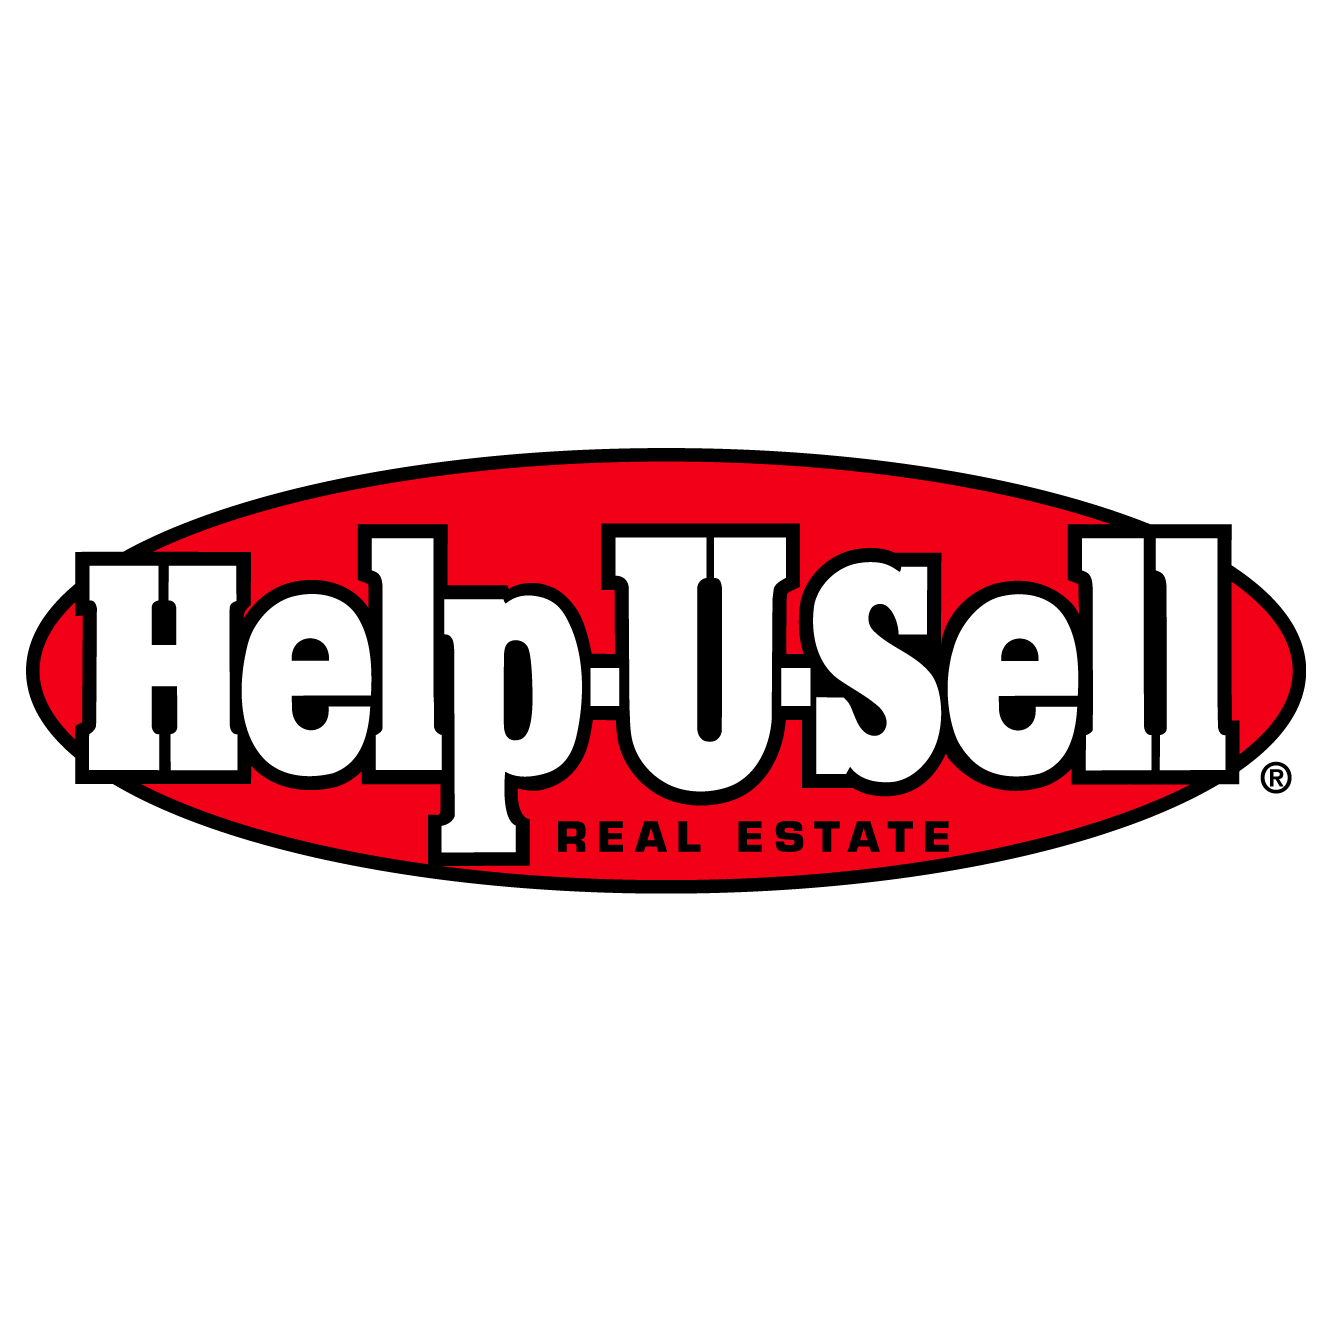 Help-U-Sell